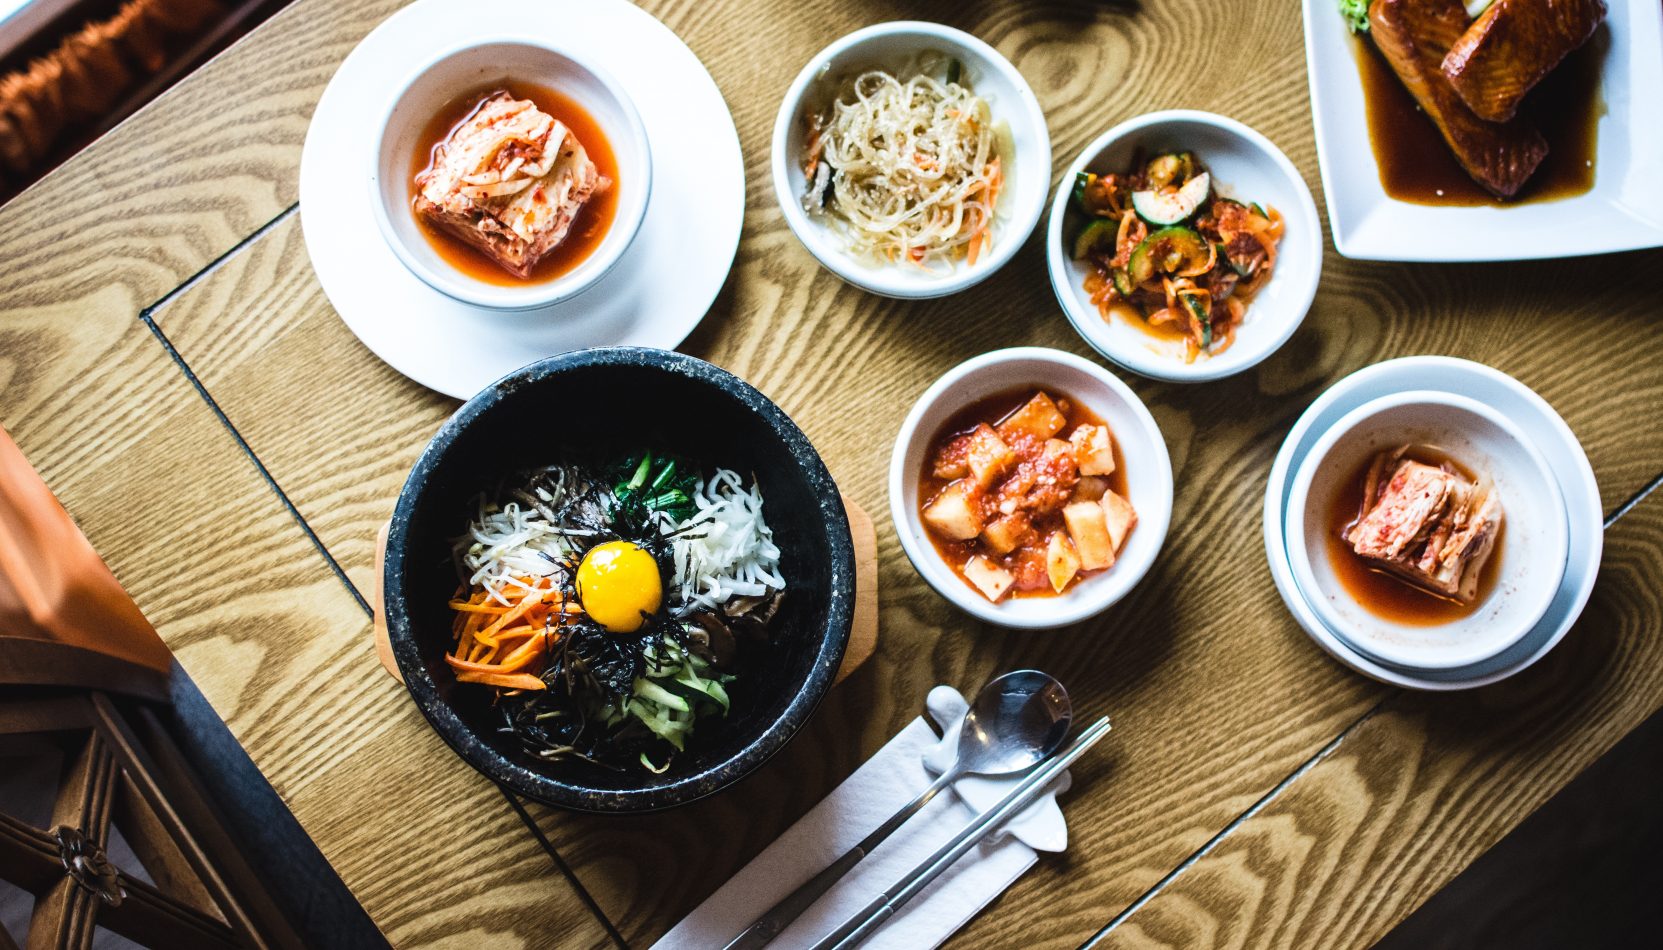 korean food festival, harvest festival, kingston, kingston upon thames, guide to, guide to whats on, food-stuff, food and drink, guide to food and drink, september 2019